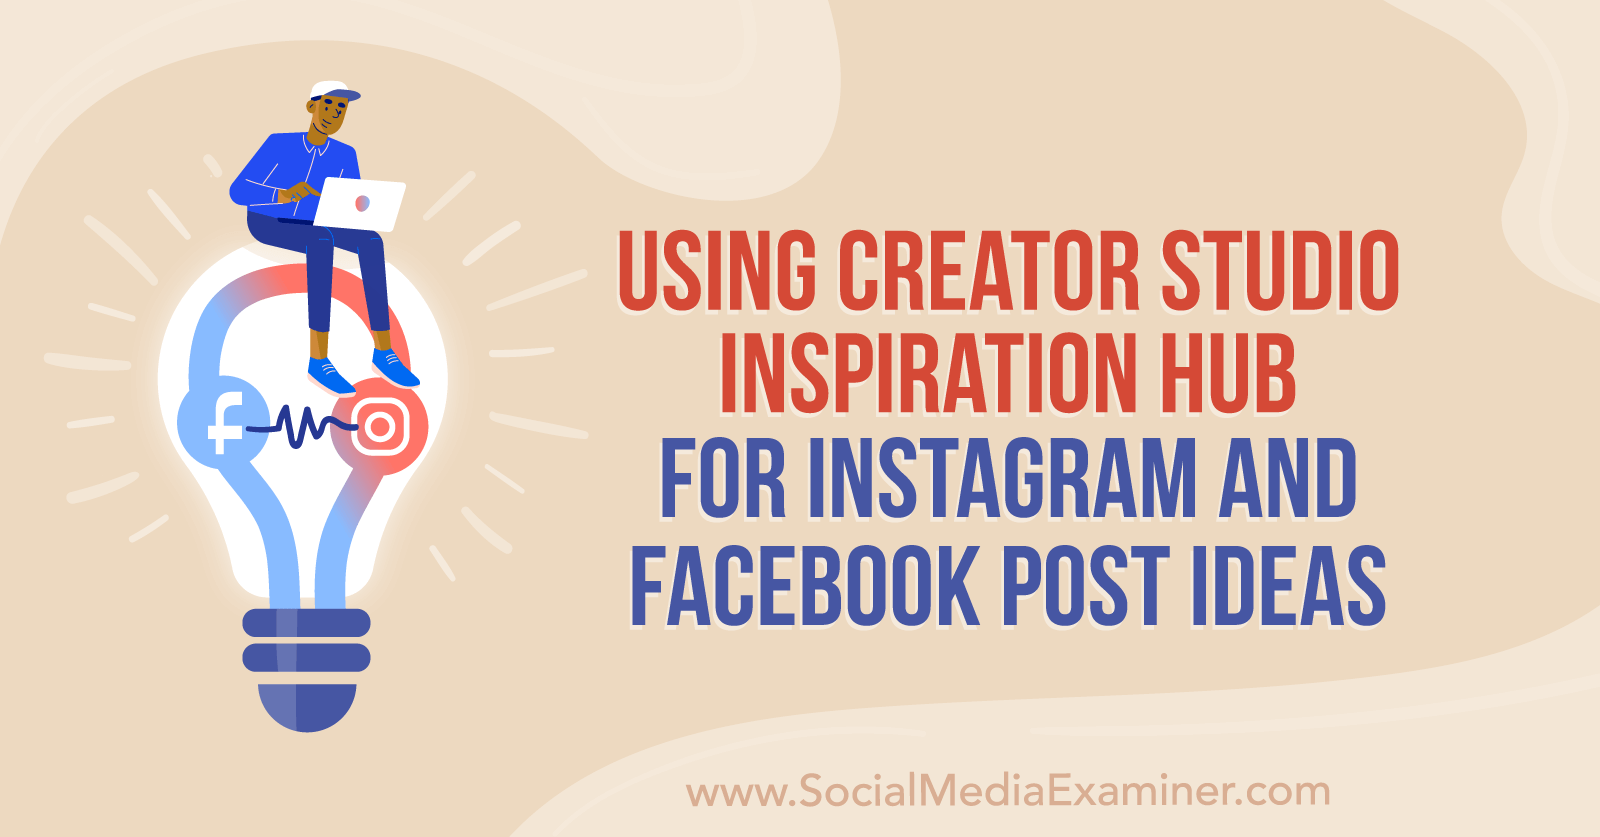 Using Creator Studio Inspiration Hub for Instagram and Facebook Post Ideas  : Social Media Examiner